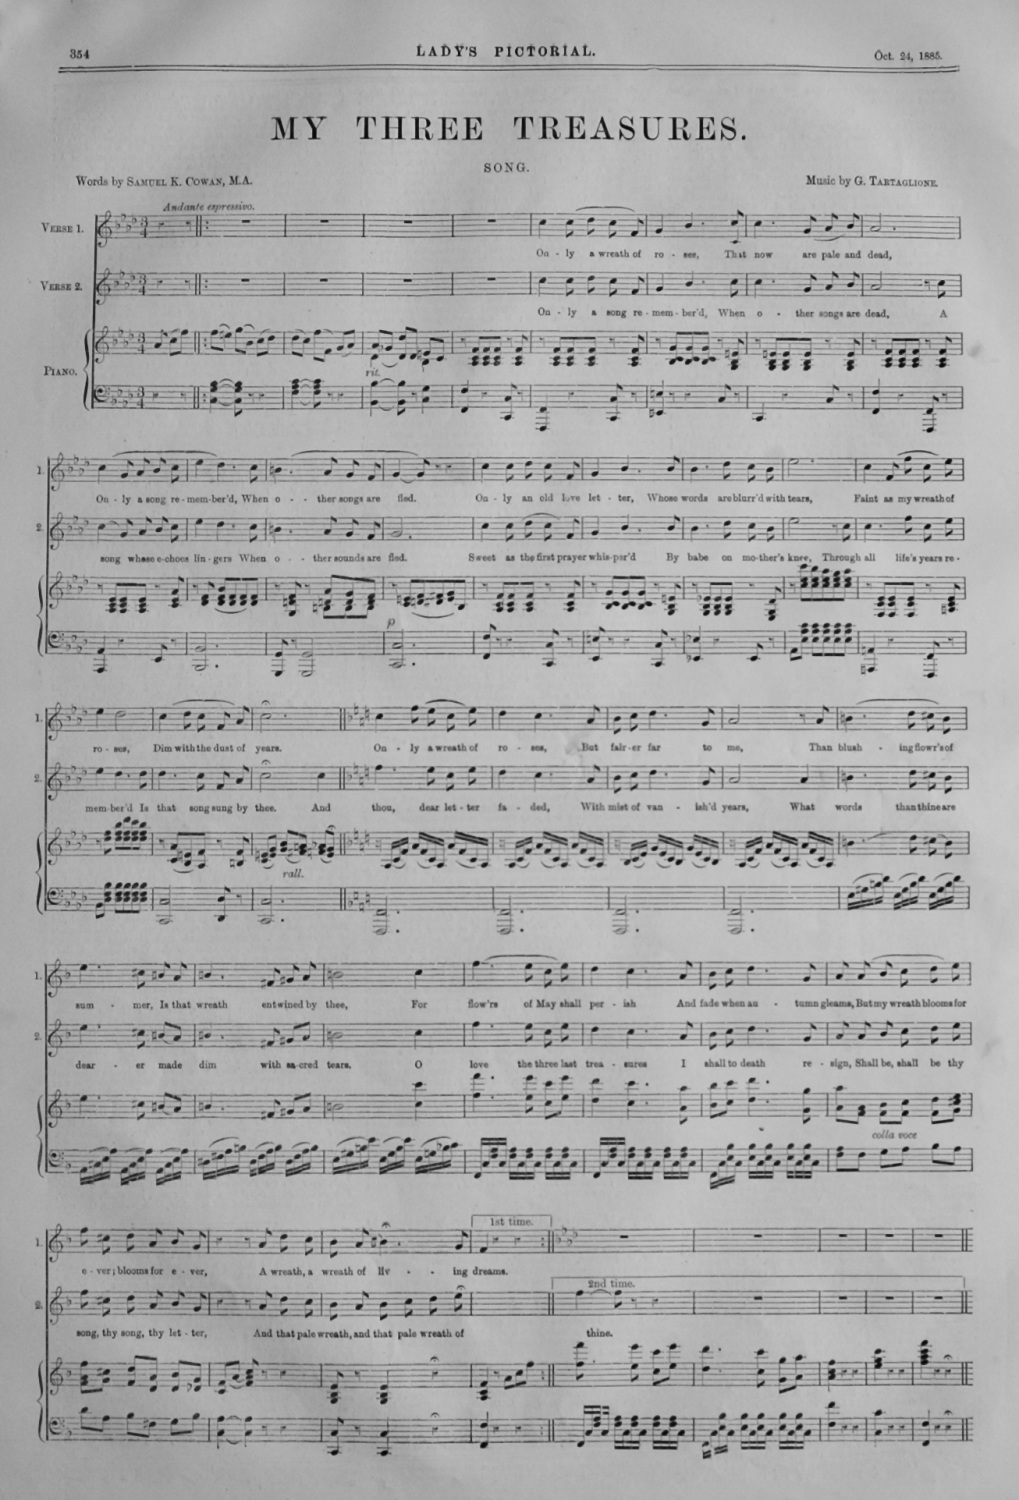 My Three Treasures.  (Sheet Music)  1885.